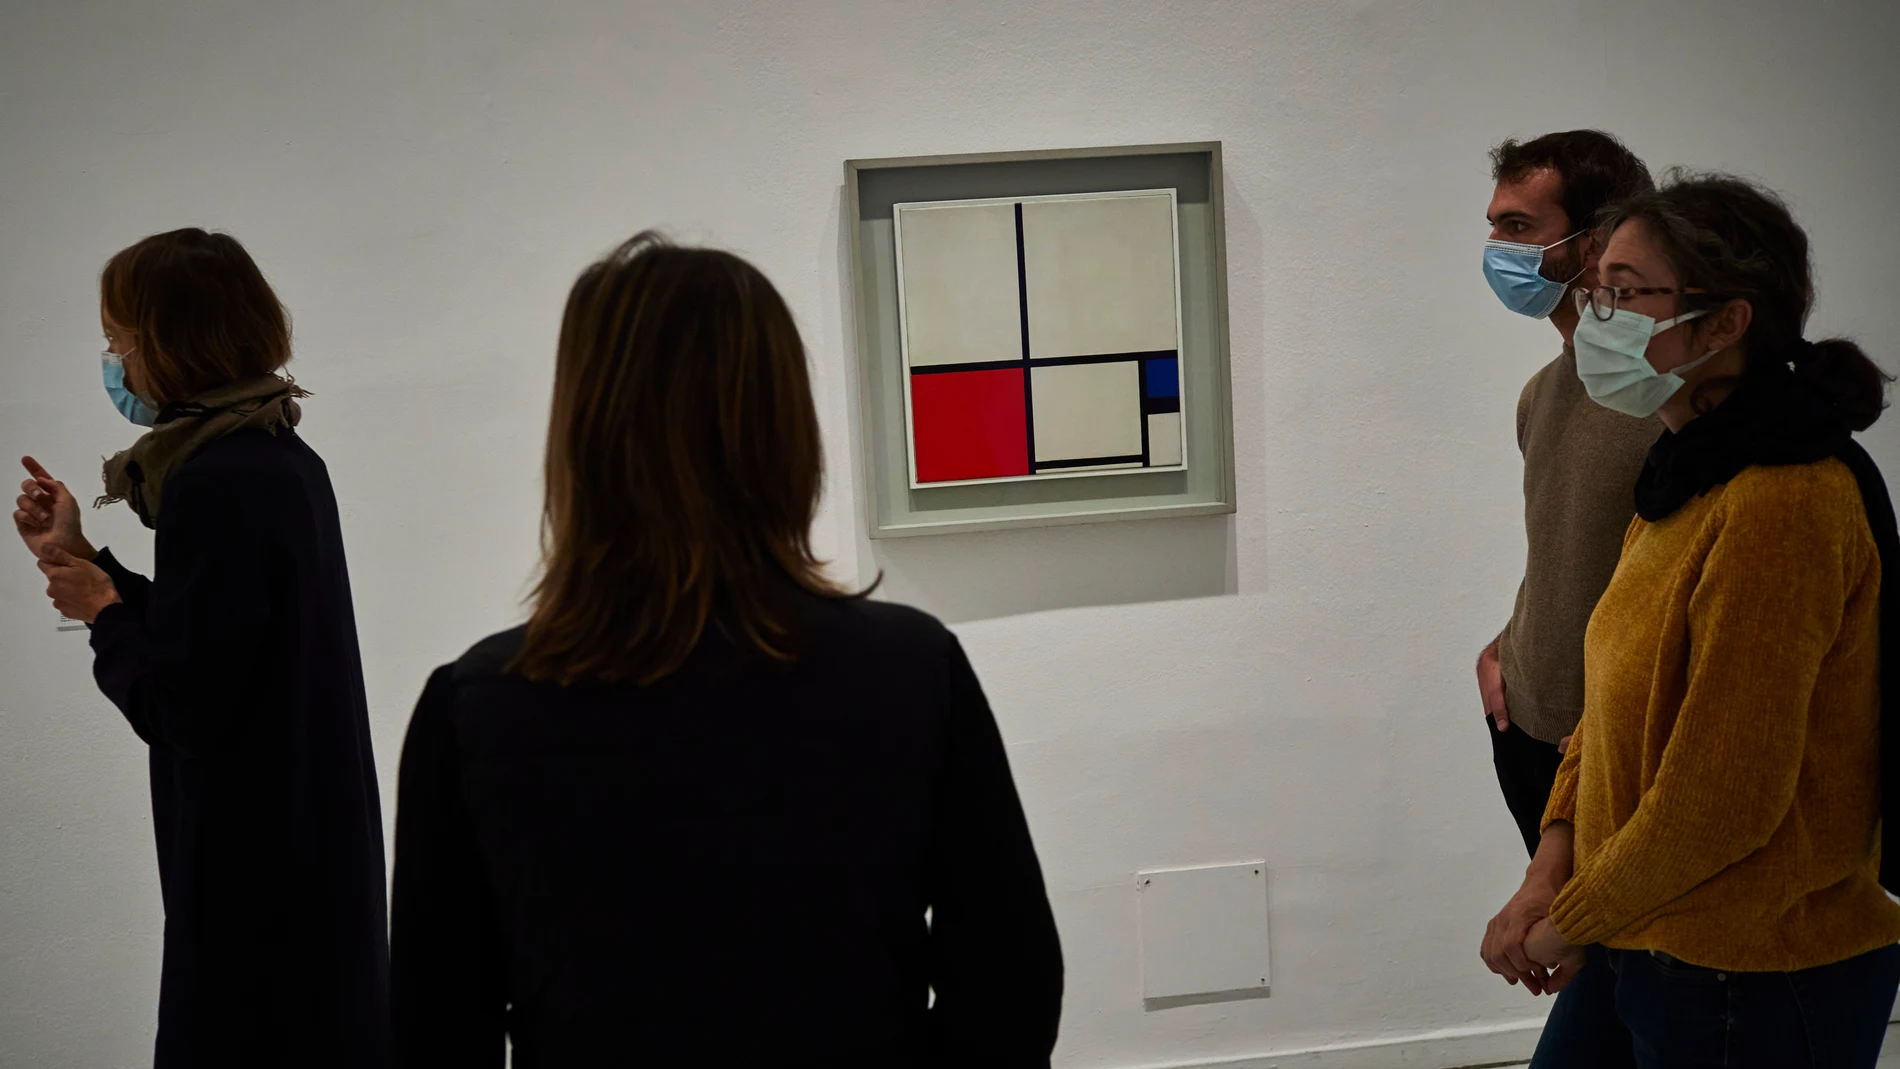 Exposición de Piet Mondrian y De Stijl, en el Museo Reina Sofia de Madrid